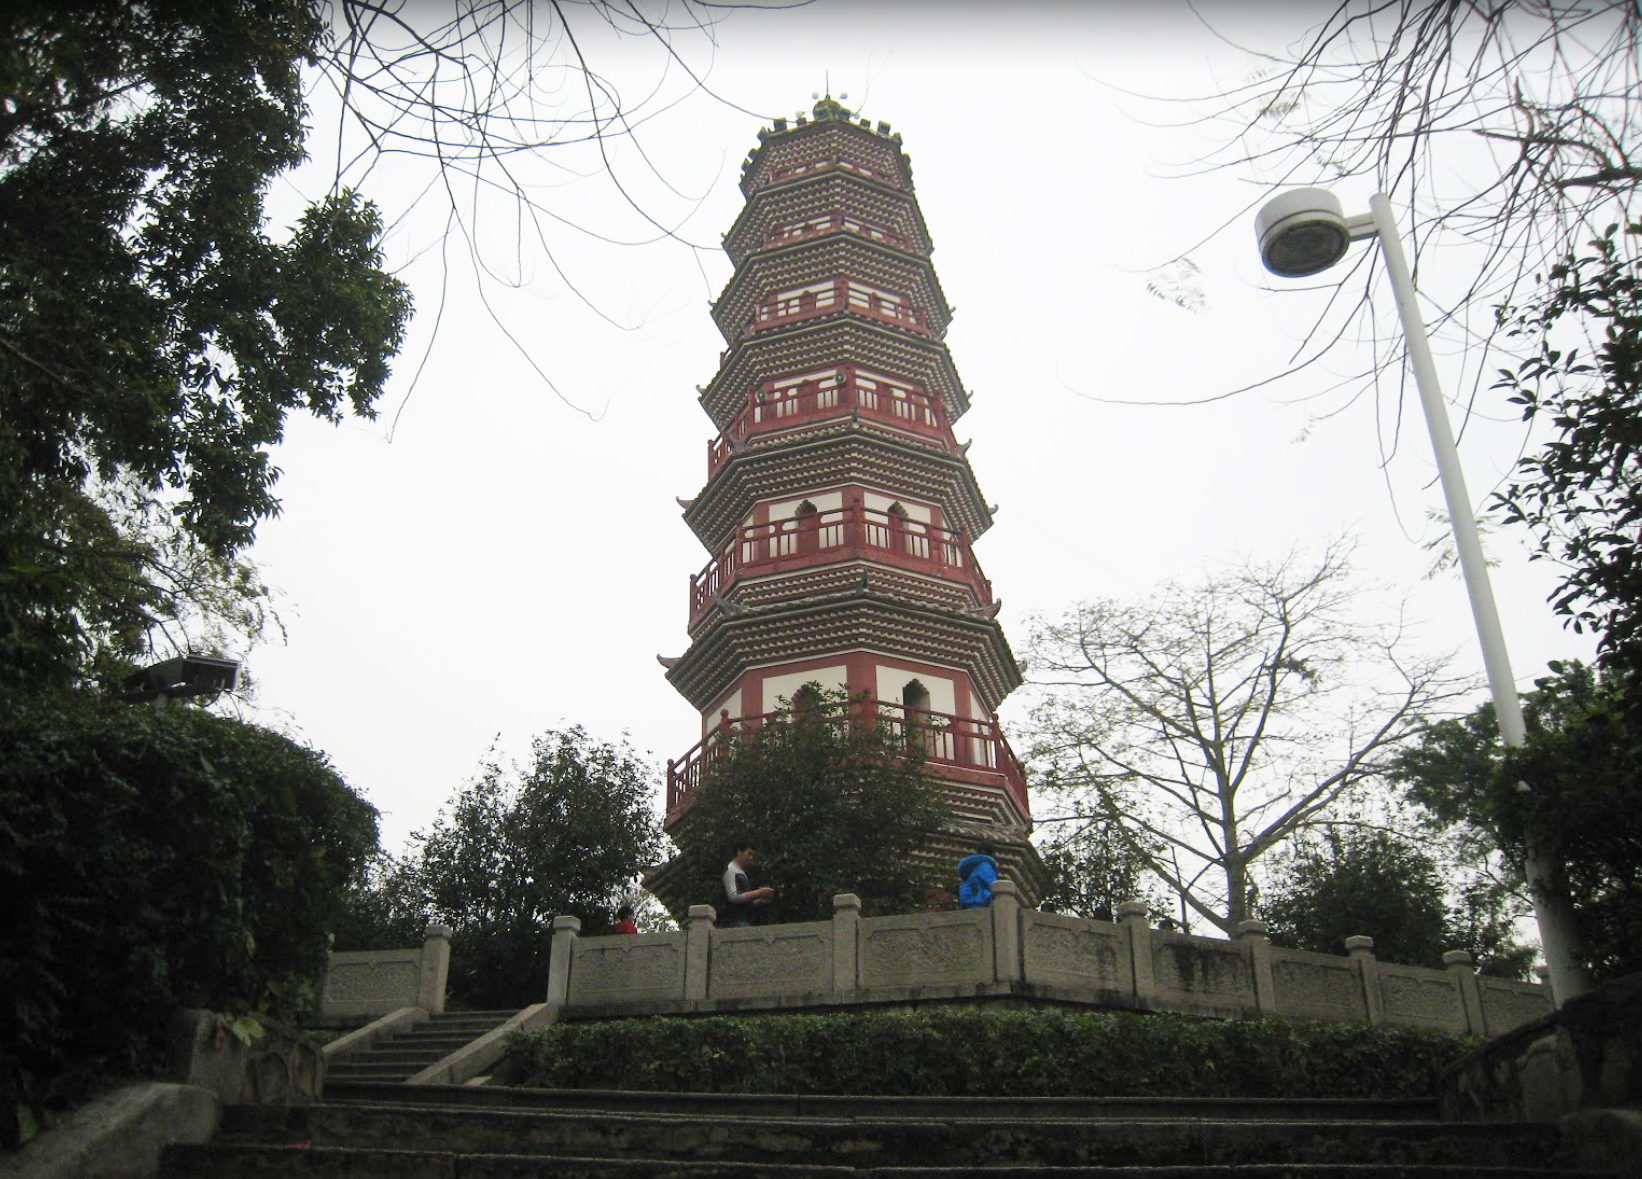 Fufen Wen Tower